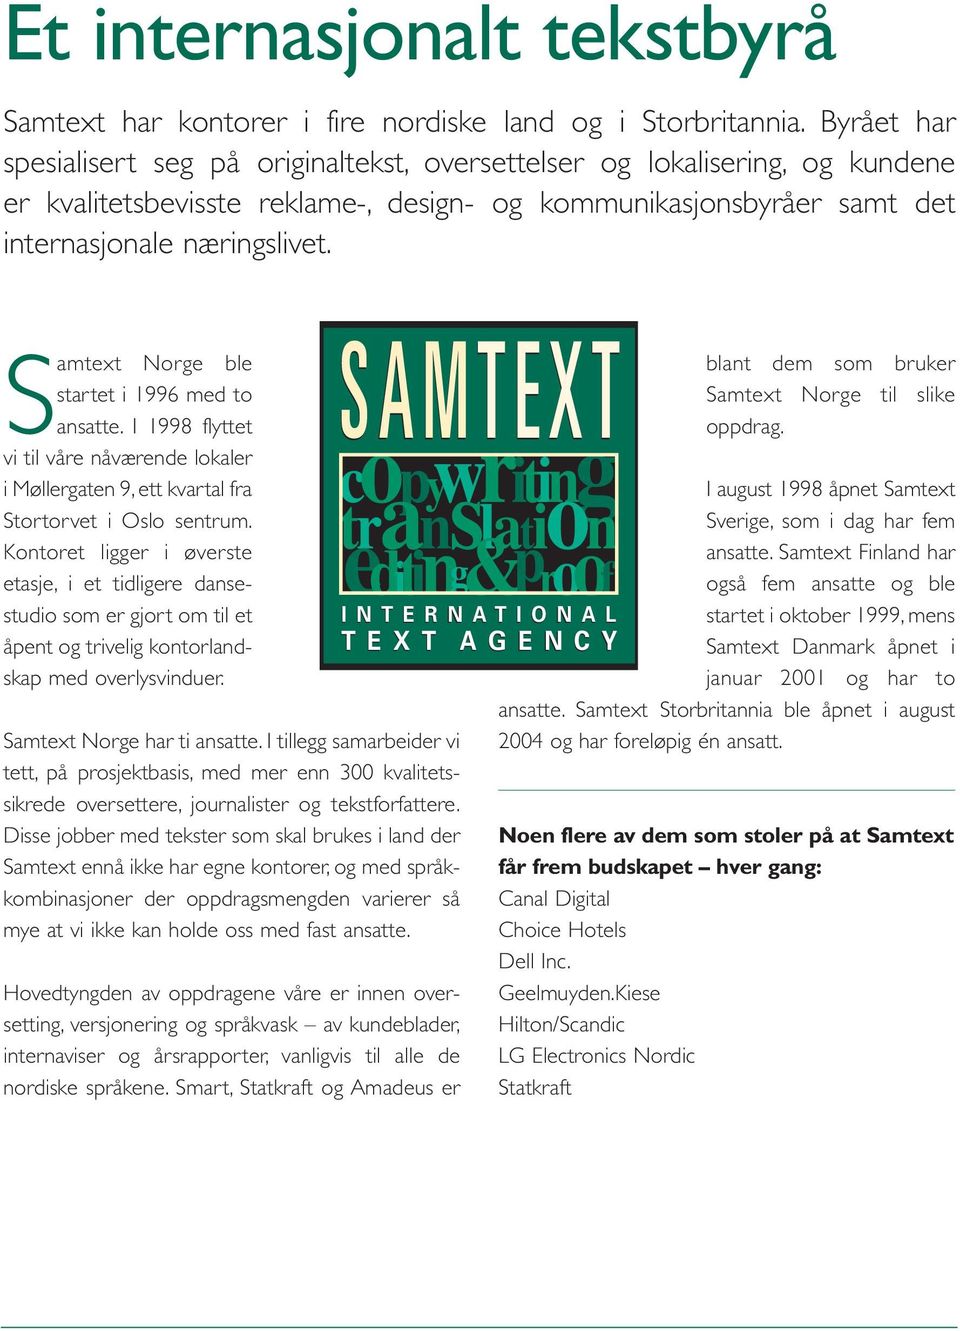 Samtext Norge ble startet i 1996 med to ansatte. I 1998 flyttet vi til våre nåværende lokaler i Møllergaten 9, ett kvartal fra Stortorvet i Oslo sentrum.